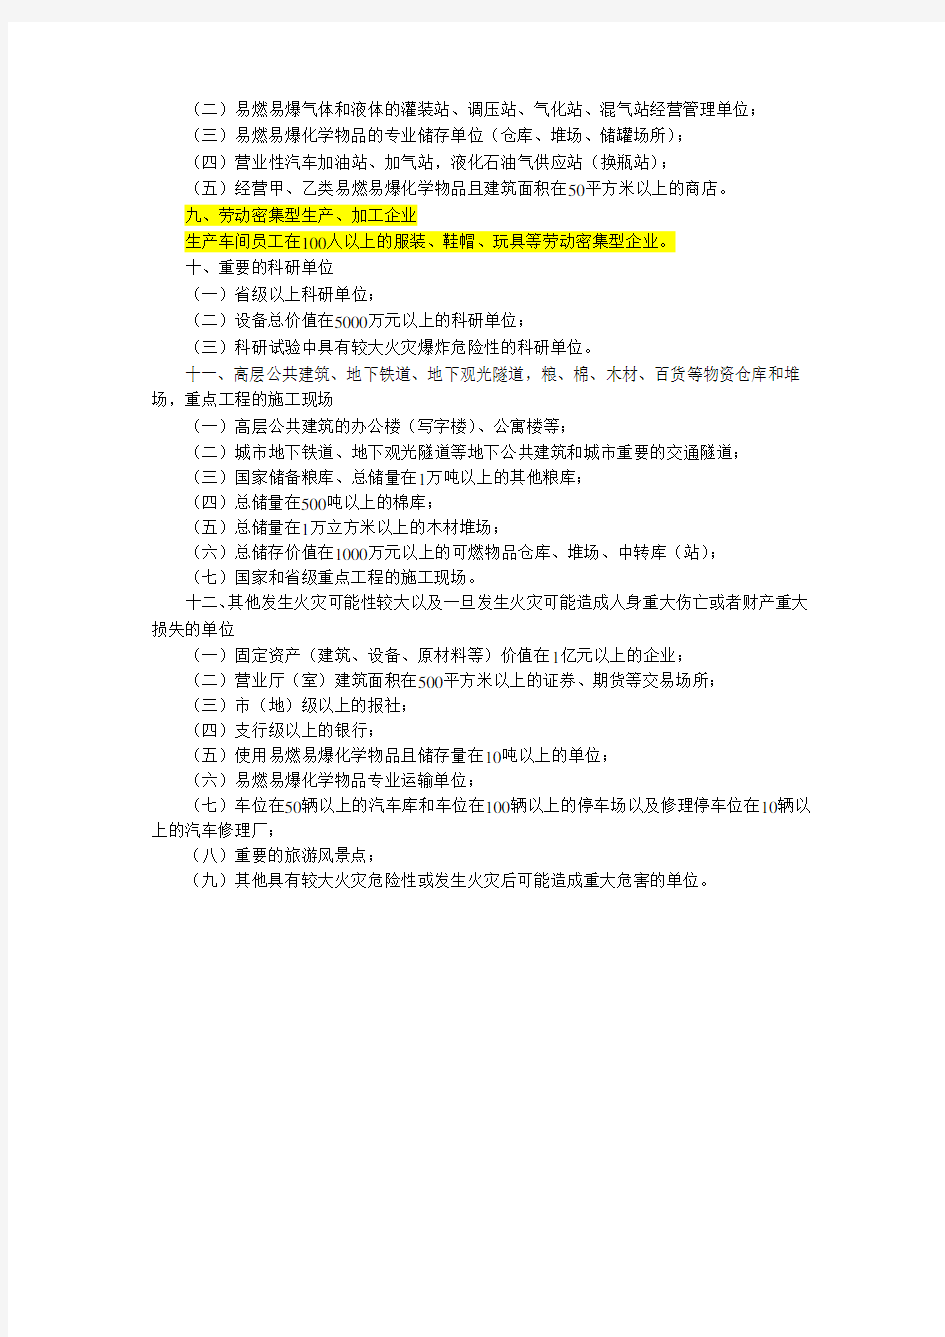 江苏省消防安全重点单位界定标准